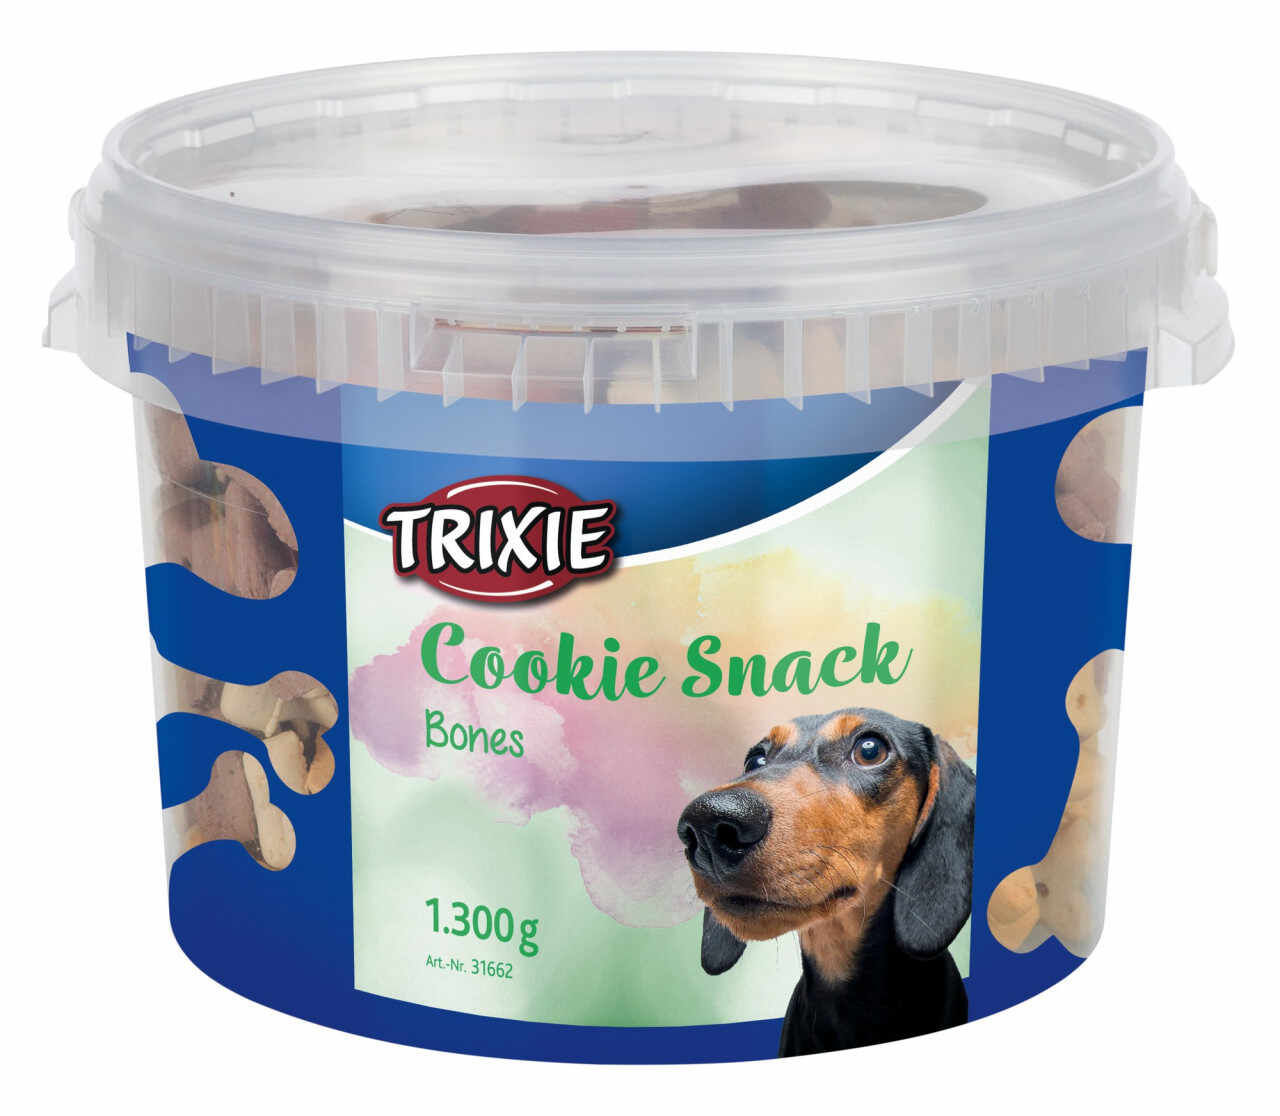 Biscuiti Cookie Snack, Bones 1300g, 31662